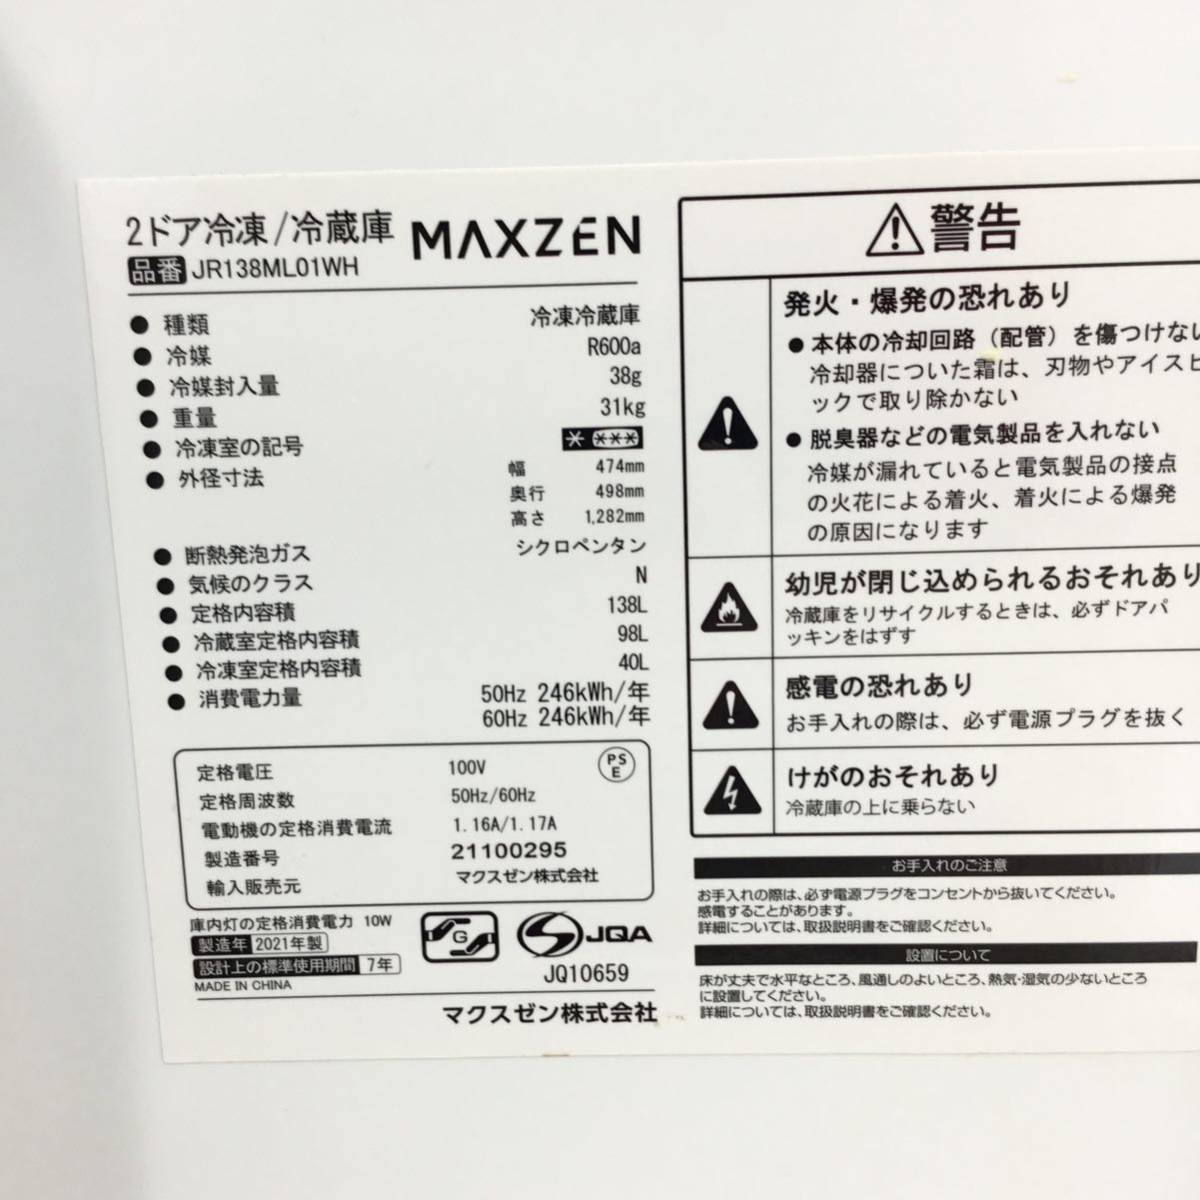 MAXZEN マクスゼン 2021年製 2ドア 138L 冷凍冷蔵庫 JR138ML01WH ホワイト S/N00295 ◎HJ10_画像4